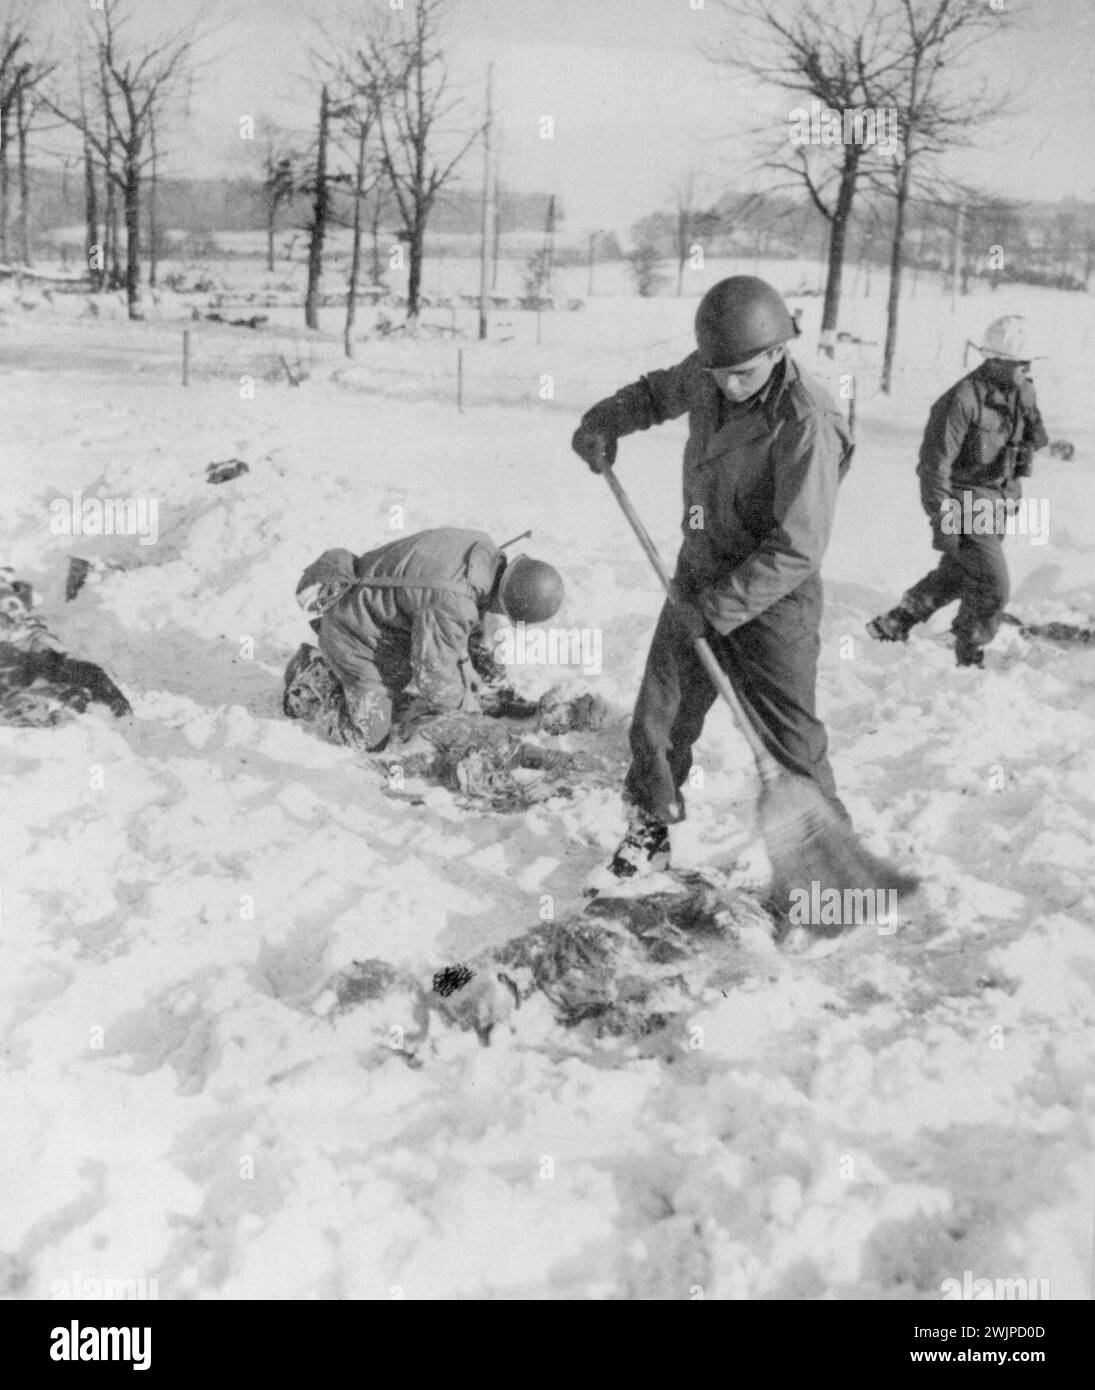 Récupérer les corps de camarades massacrés -- tâche désagréable de ces soldats américains récupérer les corps de leurs camarades qui ont été massacrés par les Allemands après avoir été faits prisonniers dans la récente route nazie à travers la Belgique. Dans ce champ, à la périphérie du village de Baugnez, un Yank balaie la neige d’un corps. 22 janvier 1945. (Photo d'Associated Press photo). Banque D'Images